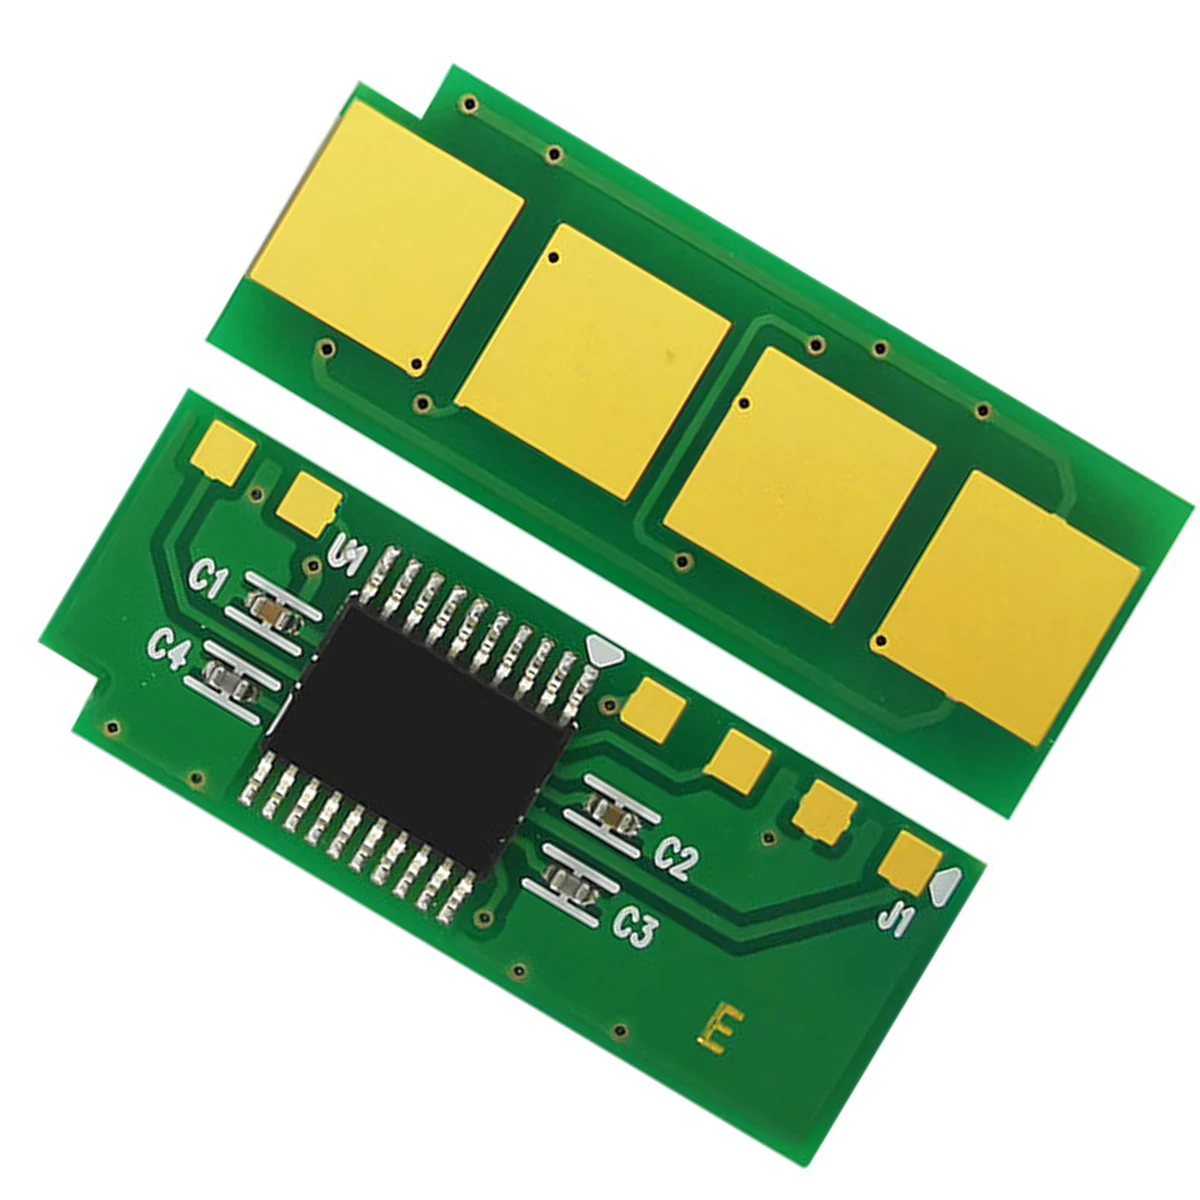 

2pcs Permanent chip PC-211EV 211EV PC-210 for Pantum P2200 P2500W P2500 M6500 m6600nw M6550 Rus MEA pc 211 PC 210 M6507